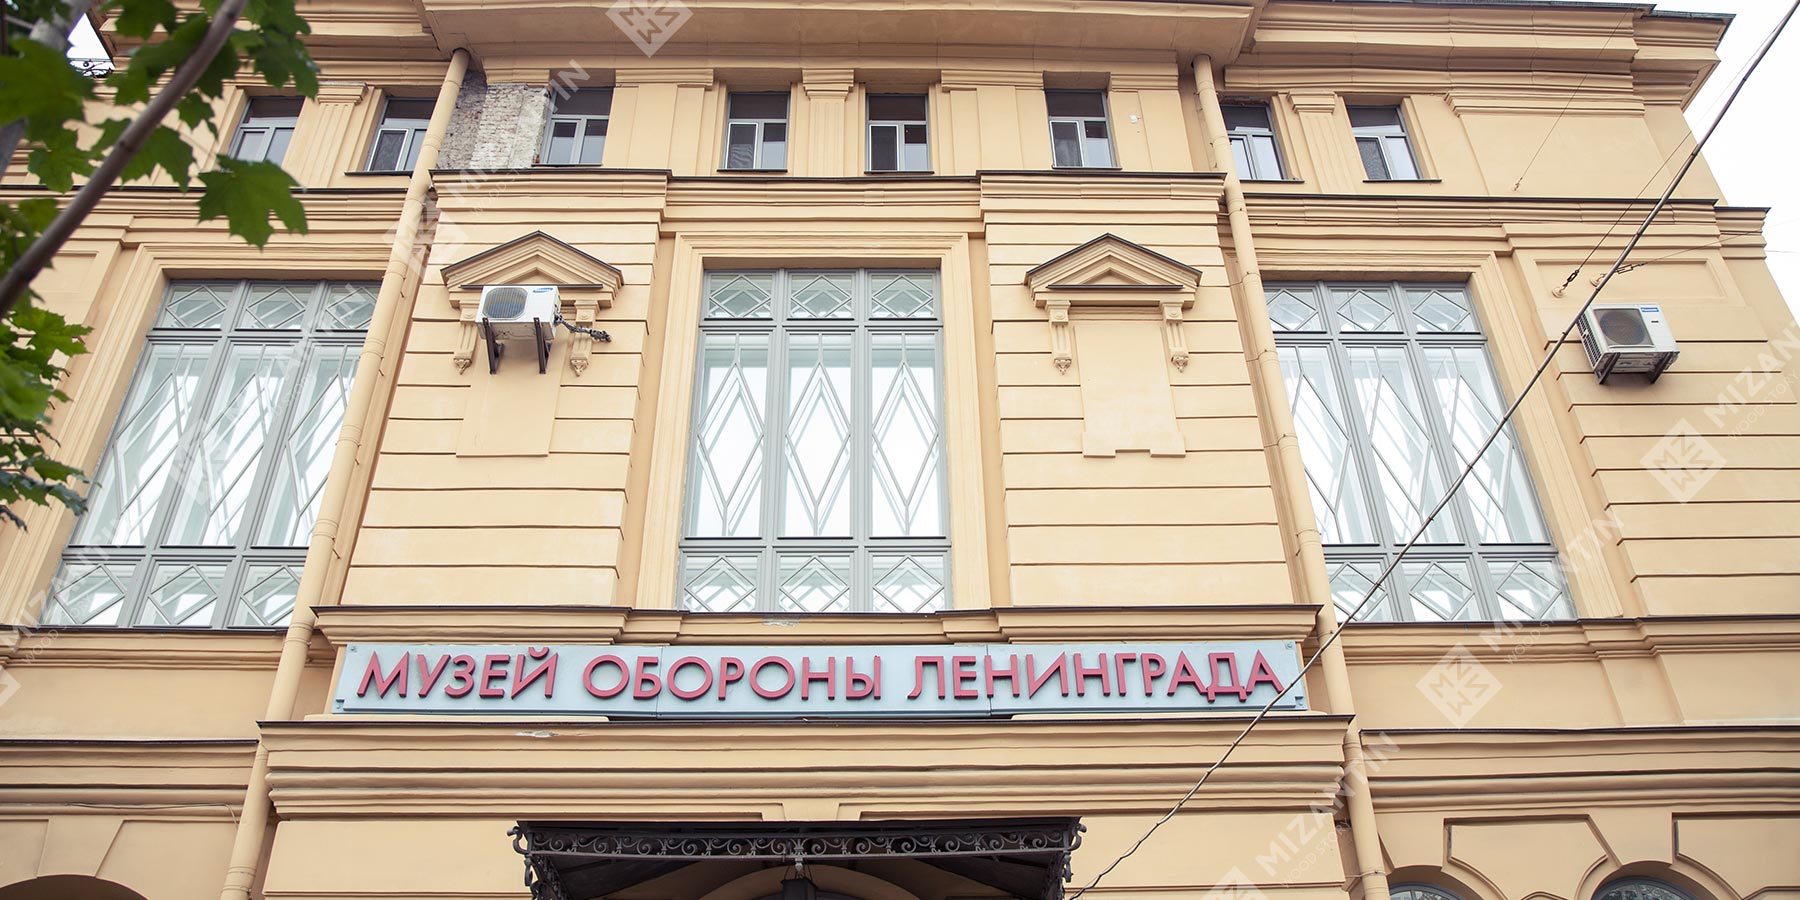 Реконструкция исторических окон для Музея обороны и блокады Ленинграда